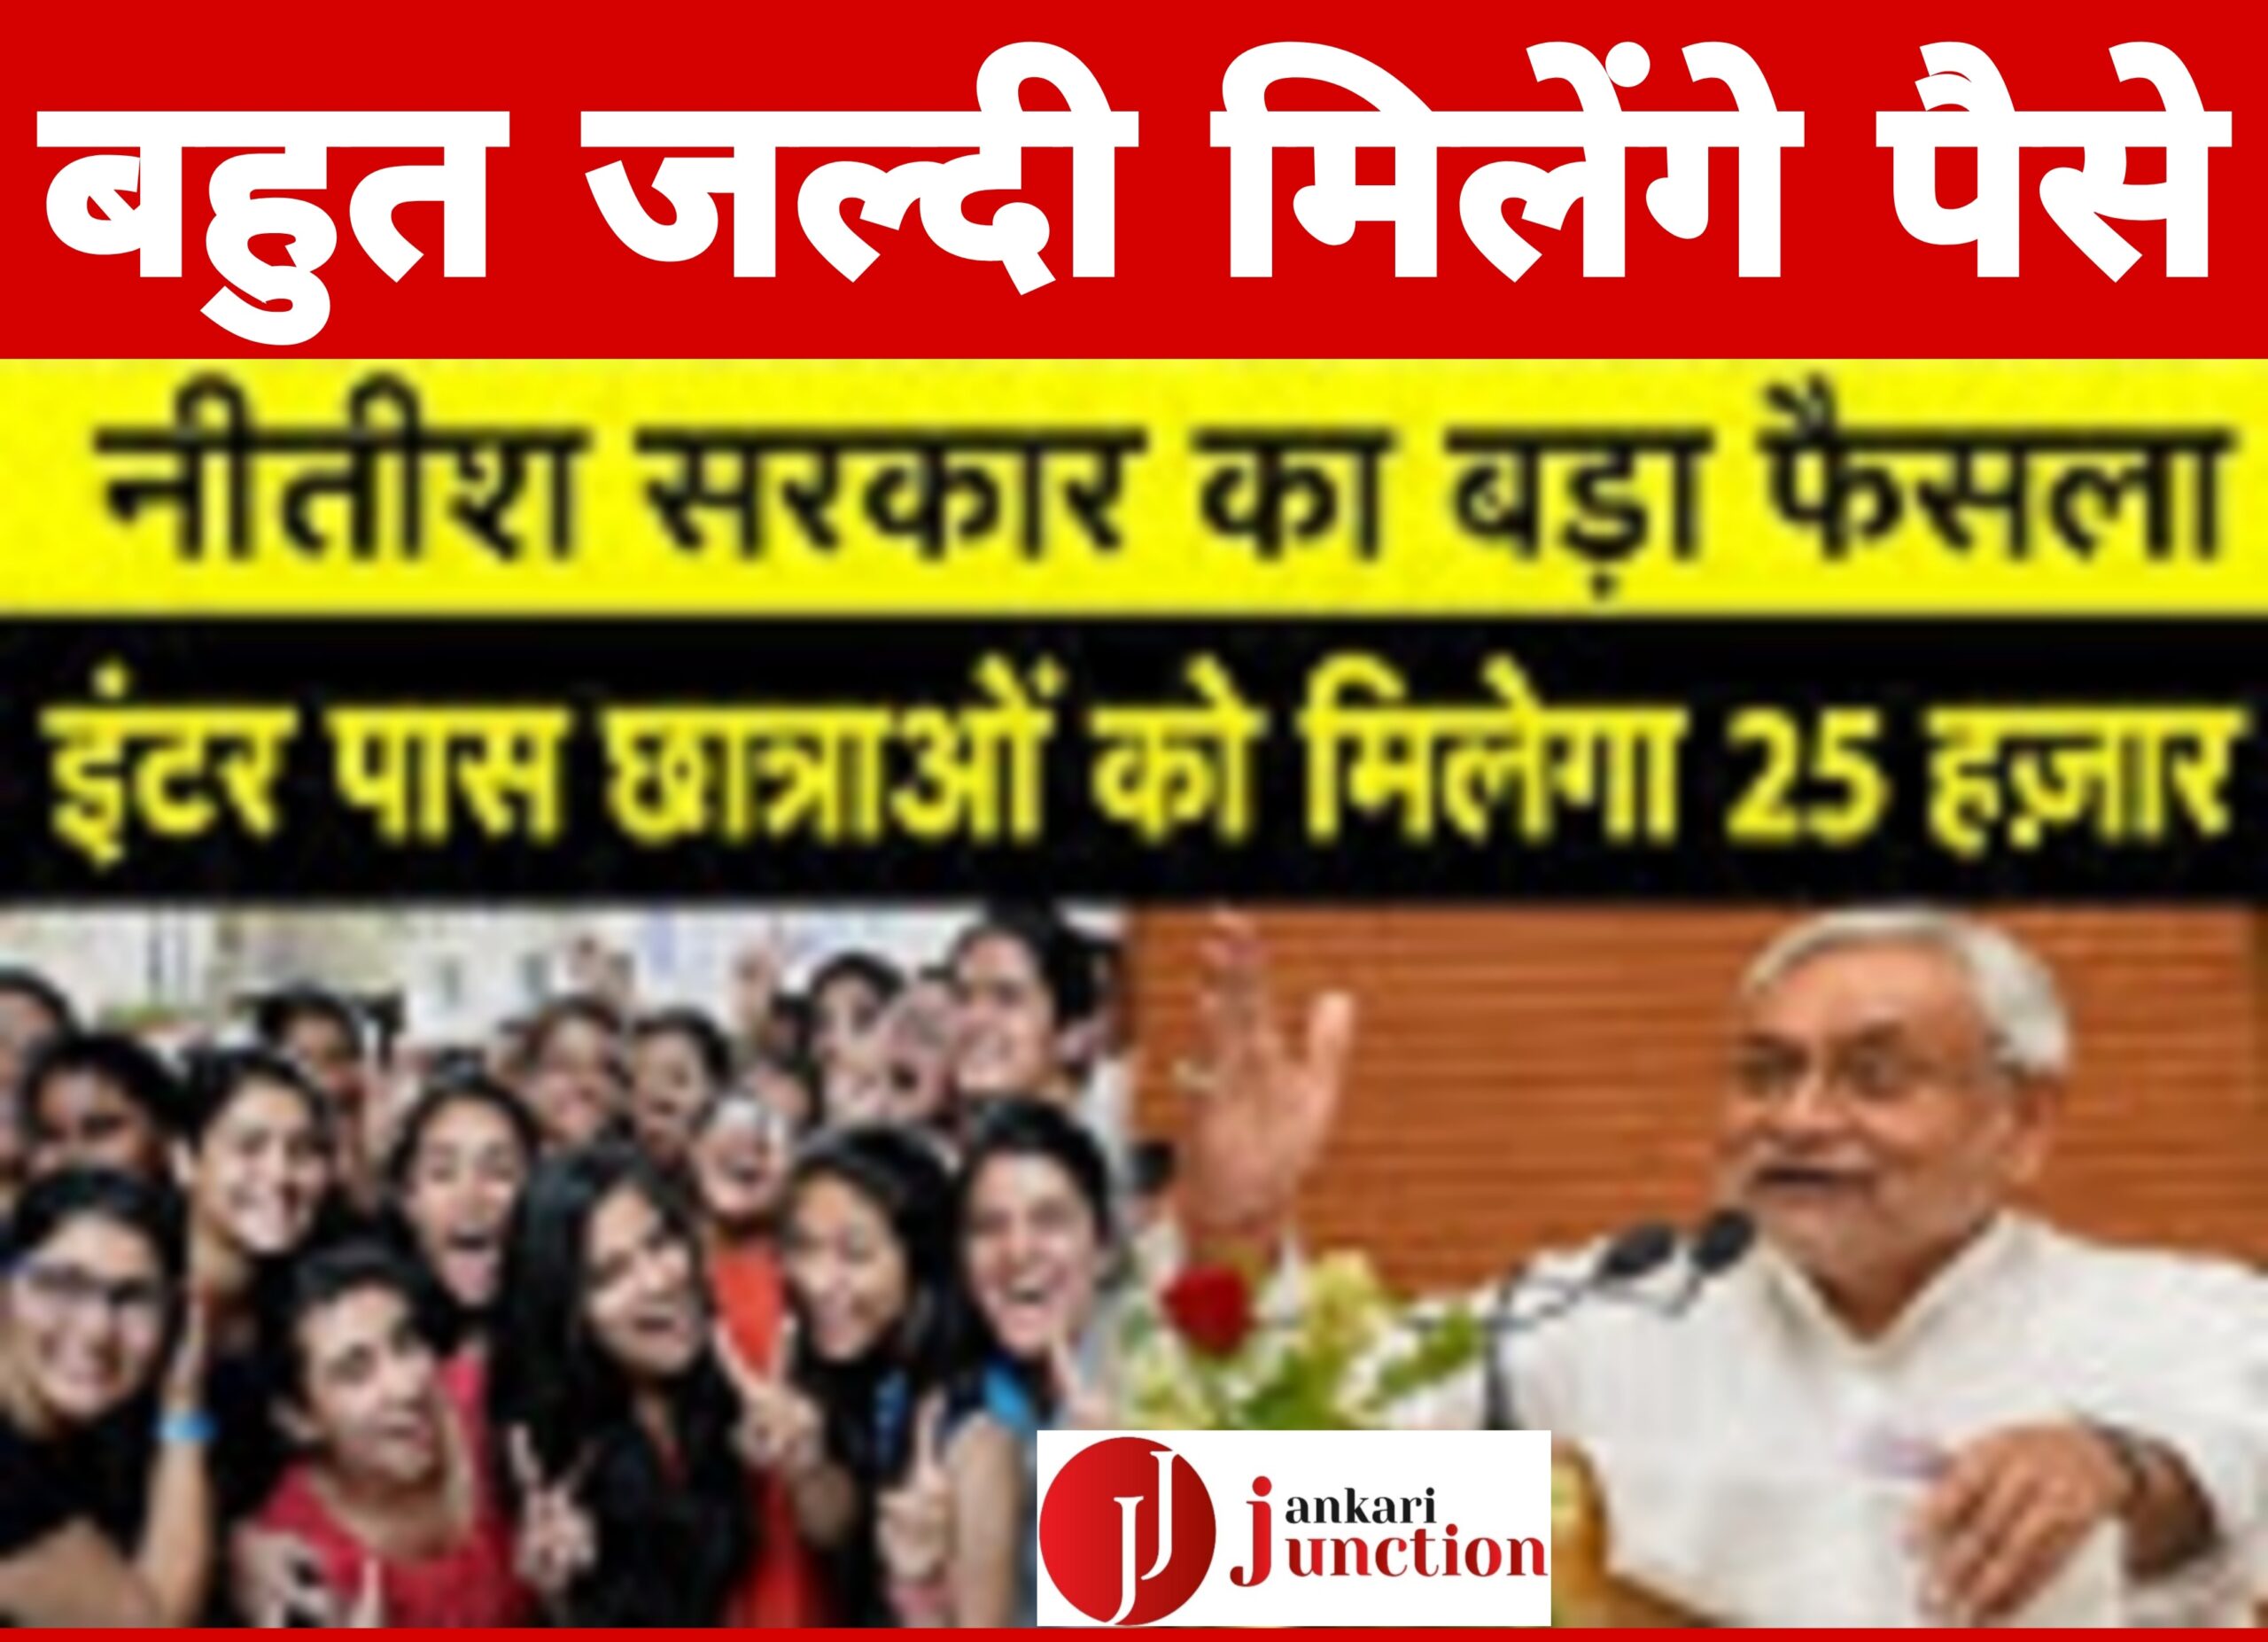 इंटर पास छात्राओं को जल्द मिलेंगे 25 हजार रुपए, नीतीश सरकार ने दी 400 करोड़ रुपये की स्वीकृति दे दिए है।